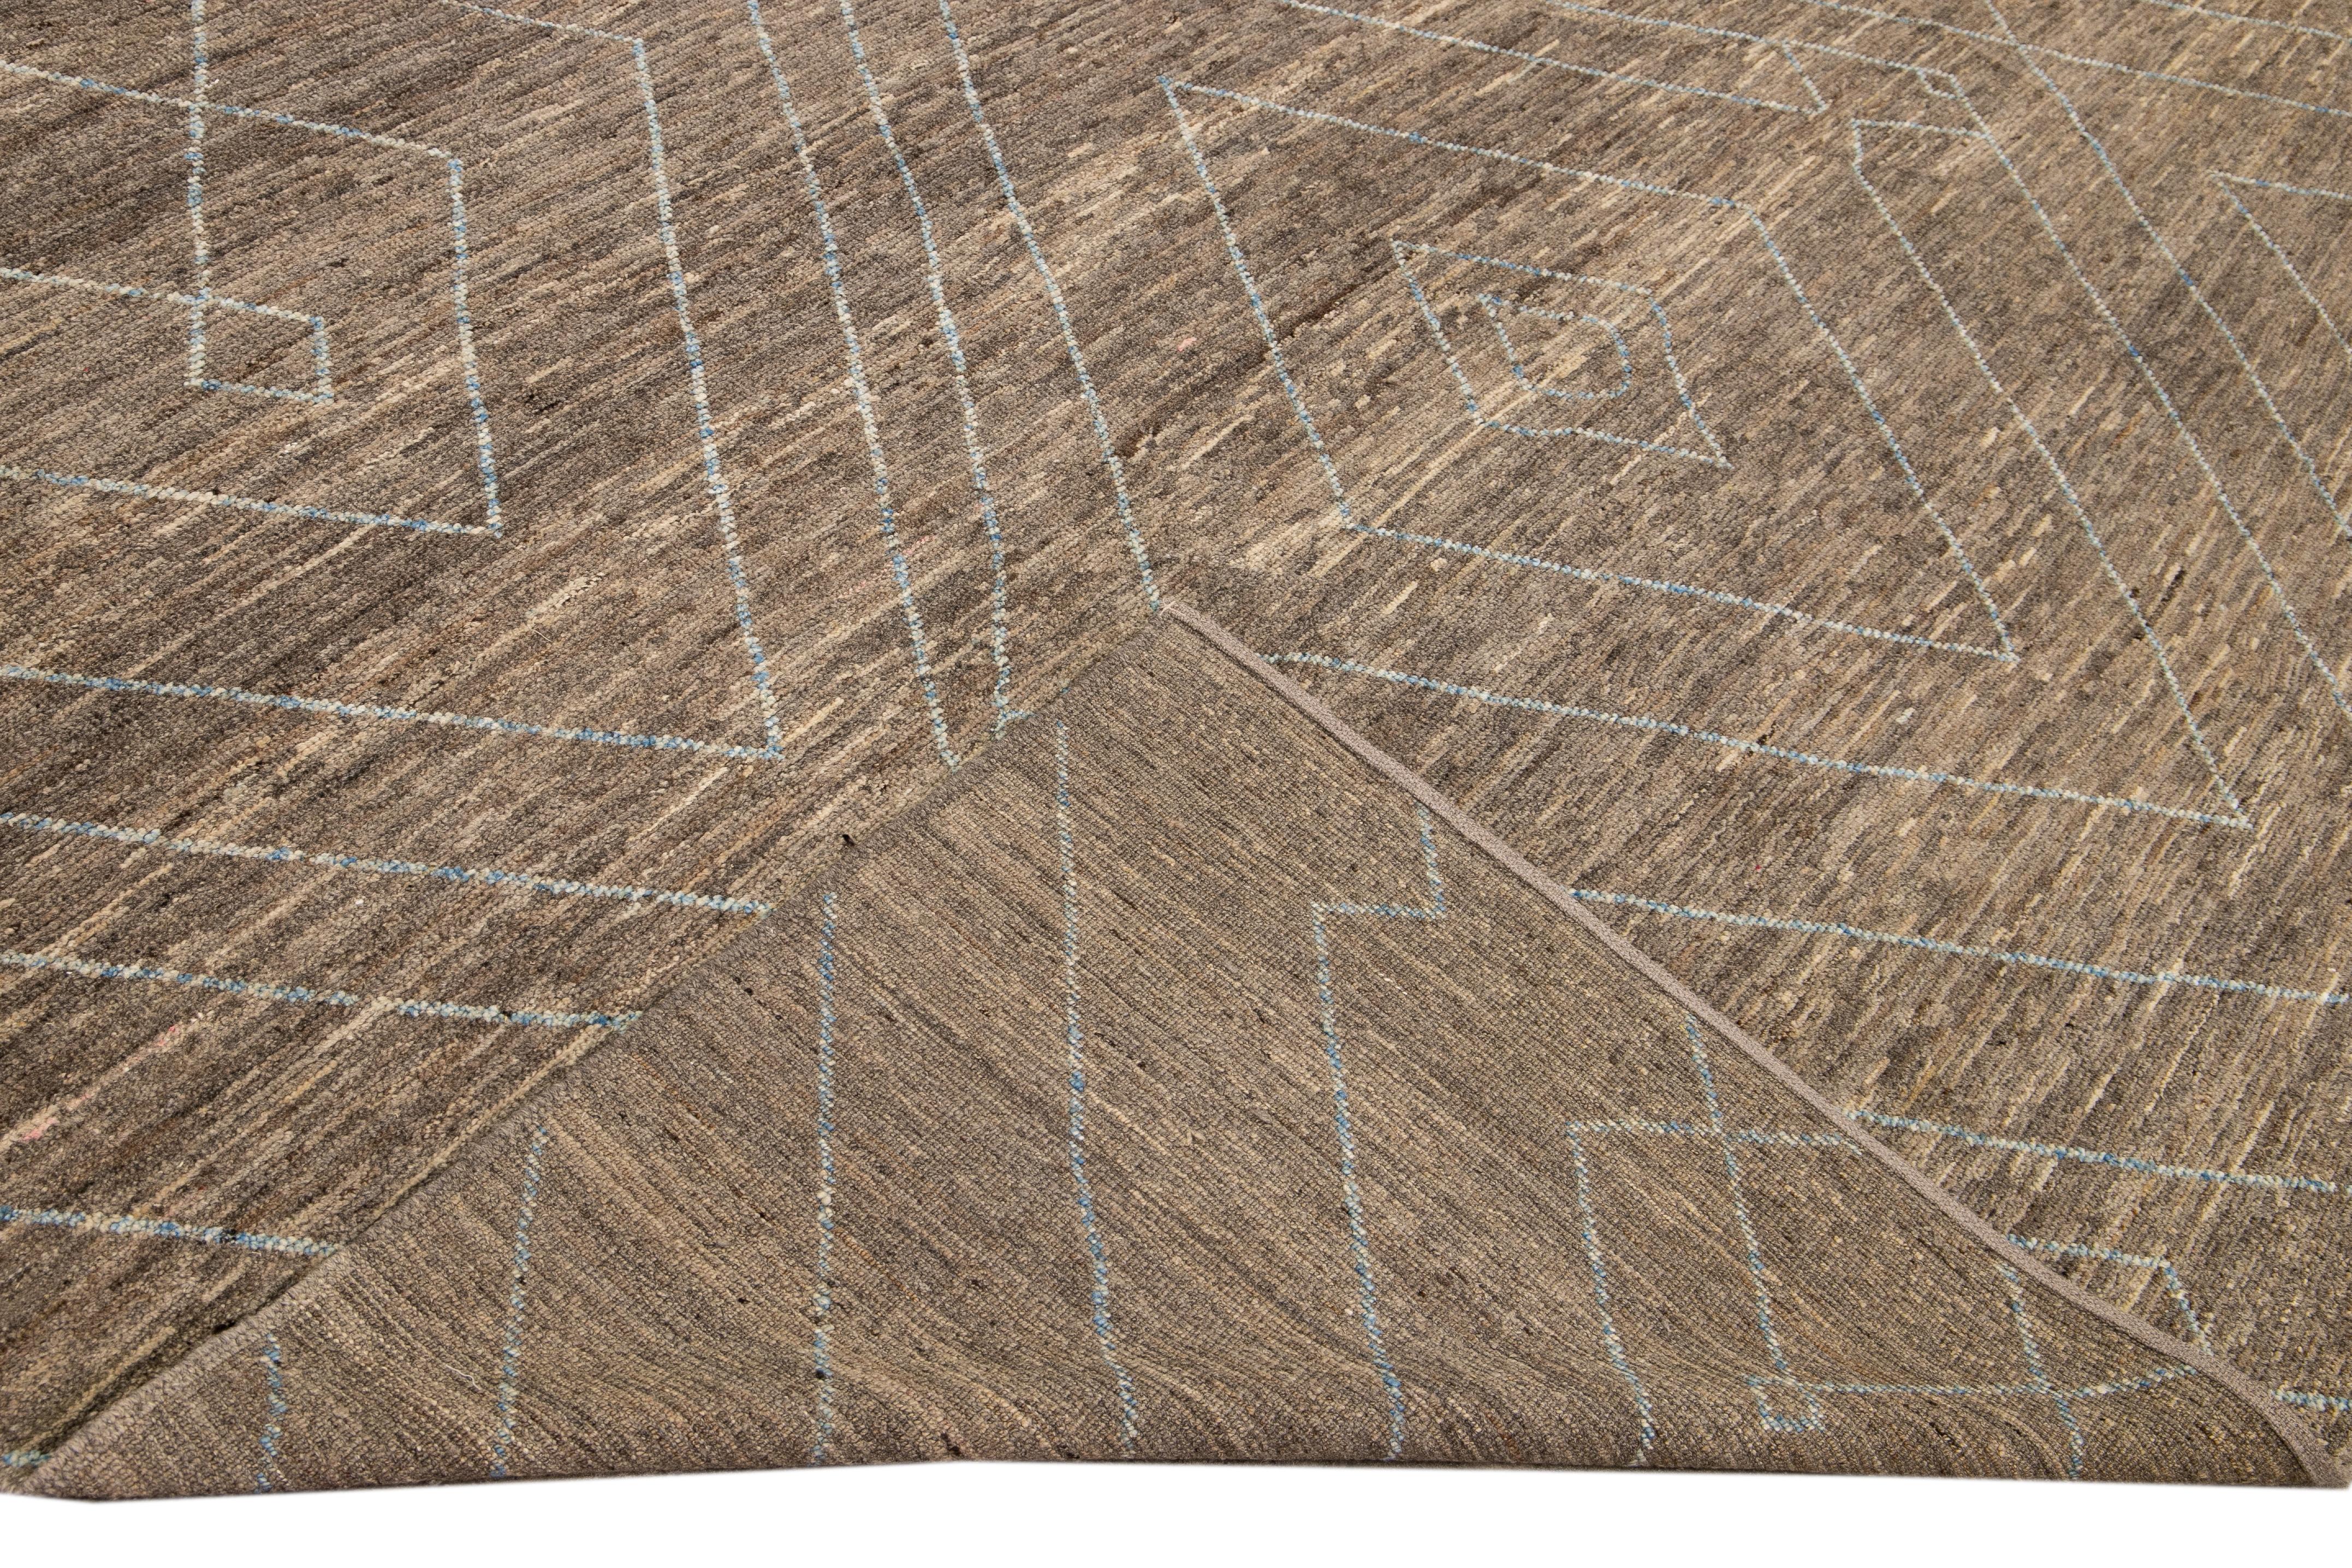 Magnifique tapis en laine fait main de style marocain avec un champ brun. Ce tapis moderne aux accents beige et bleu présente un magnifique motif géométrique sur toute sa surface.

Ce tapis mesure : 9'11